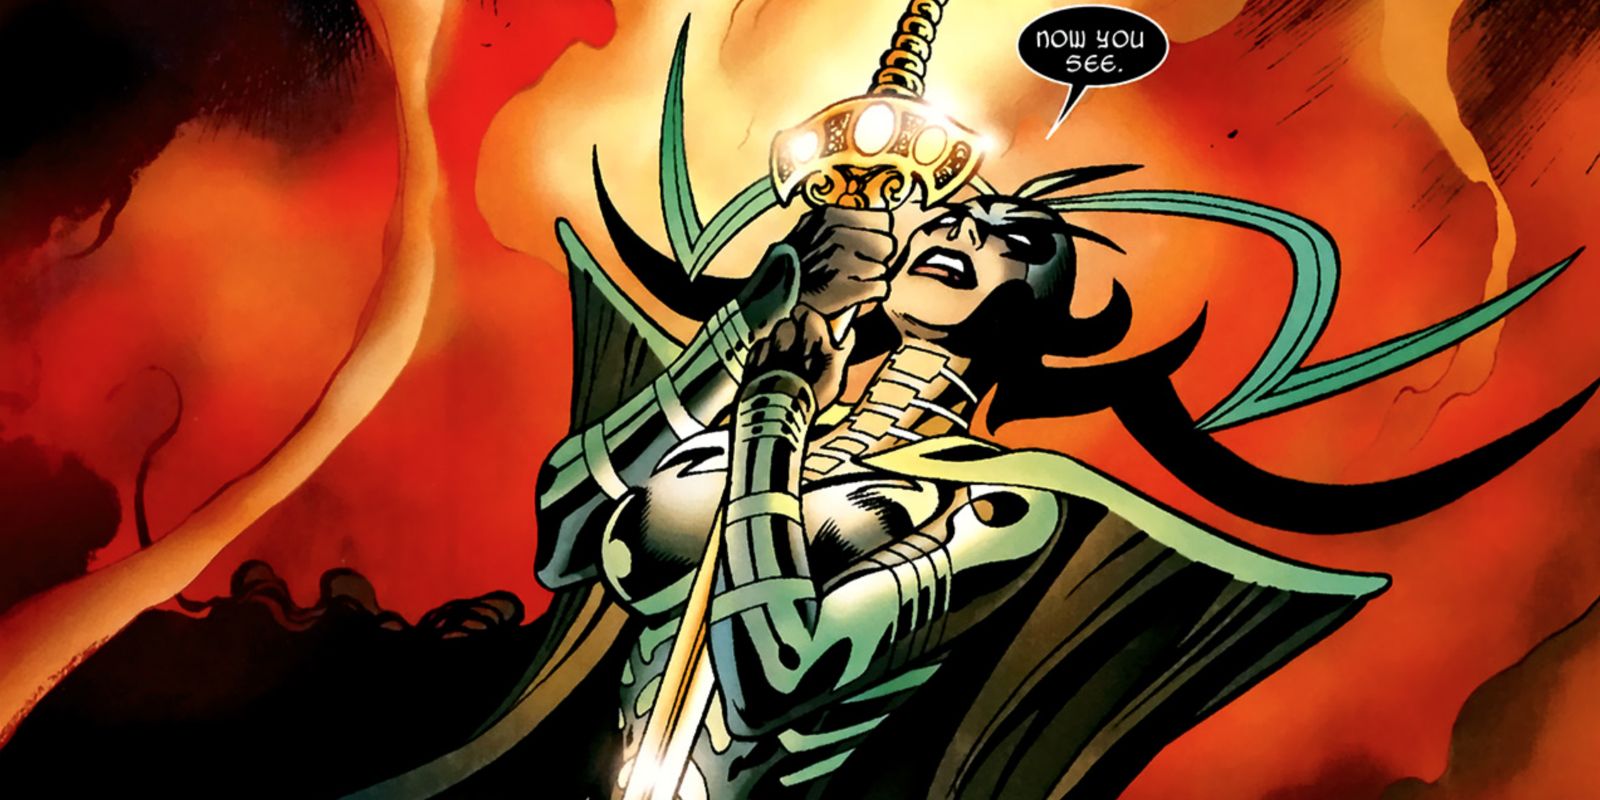 Hela clutching sword in Marvel Comics